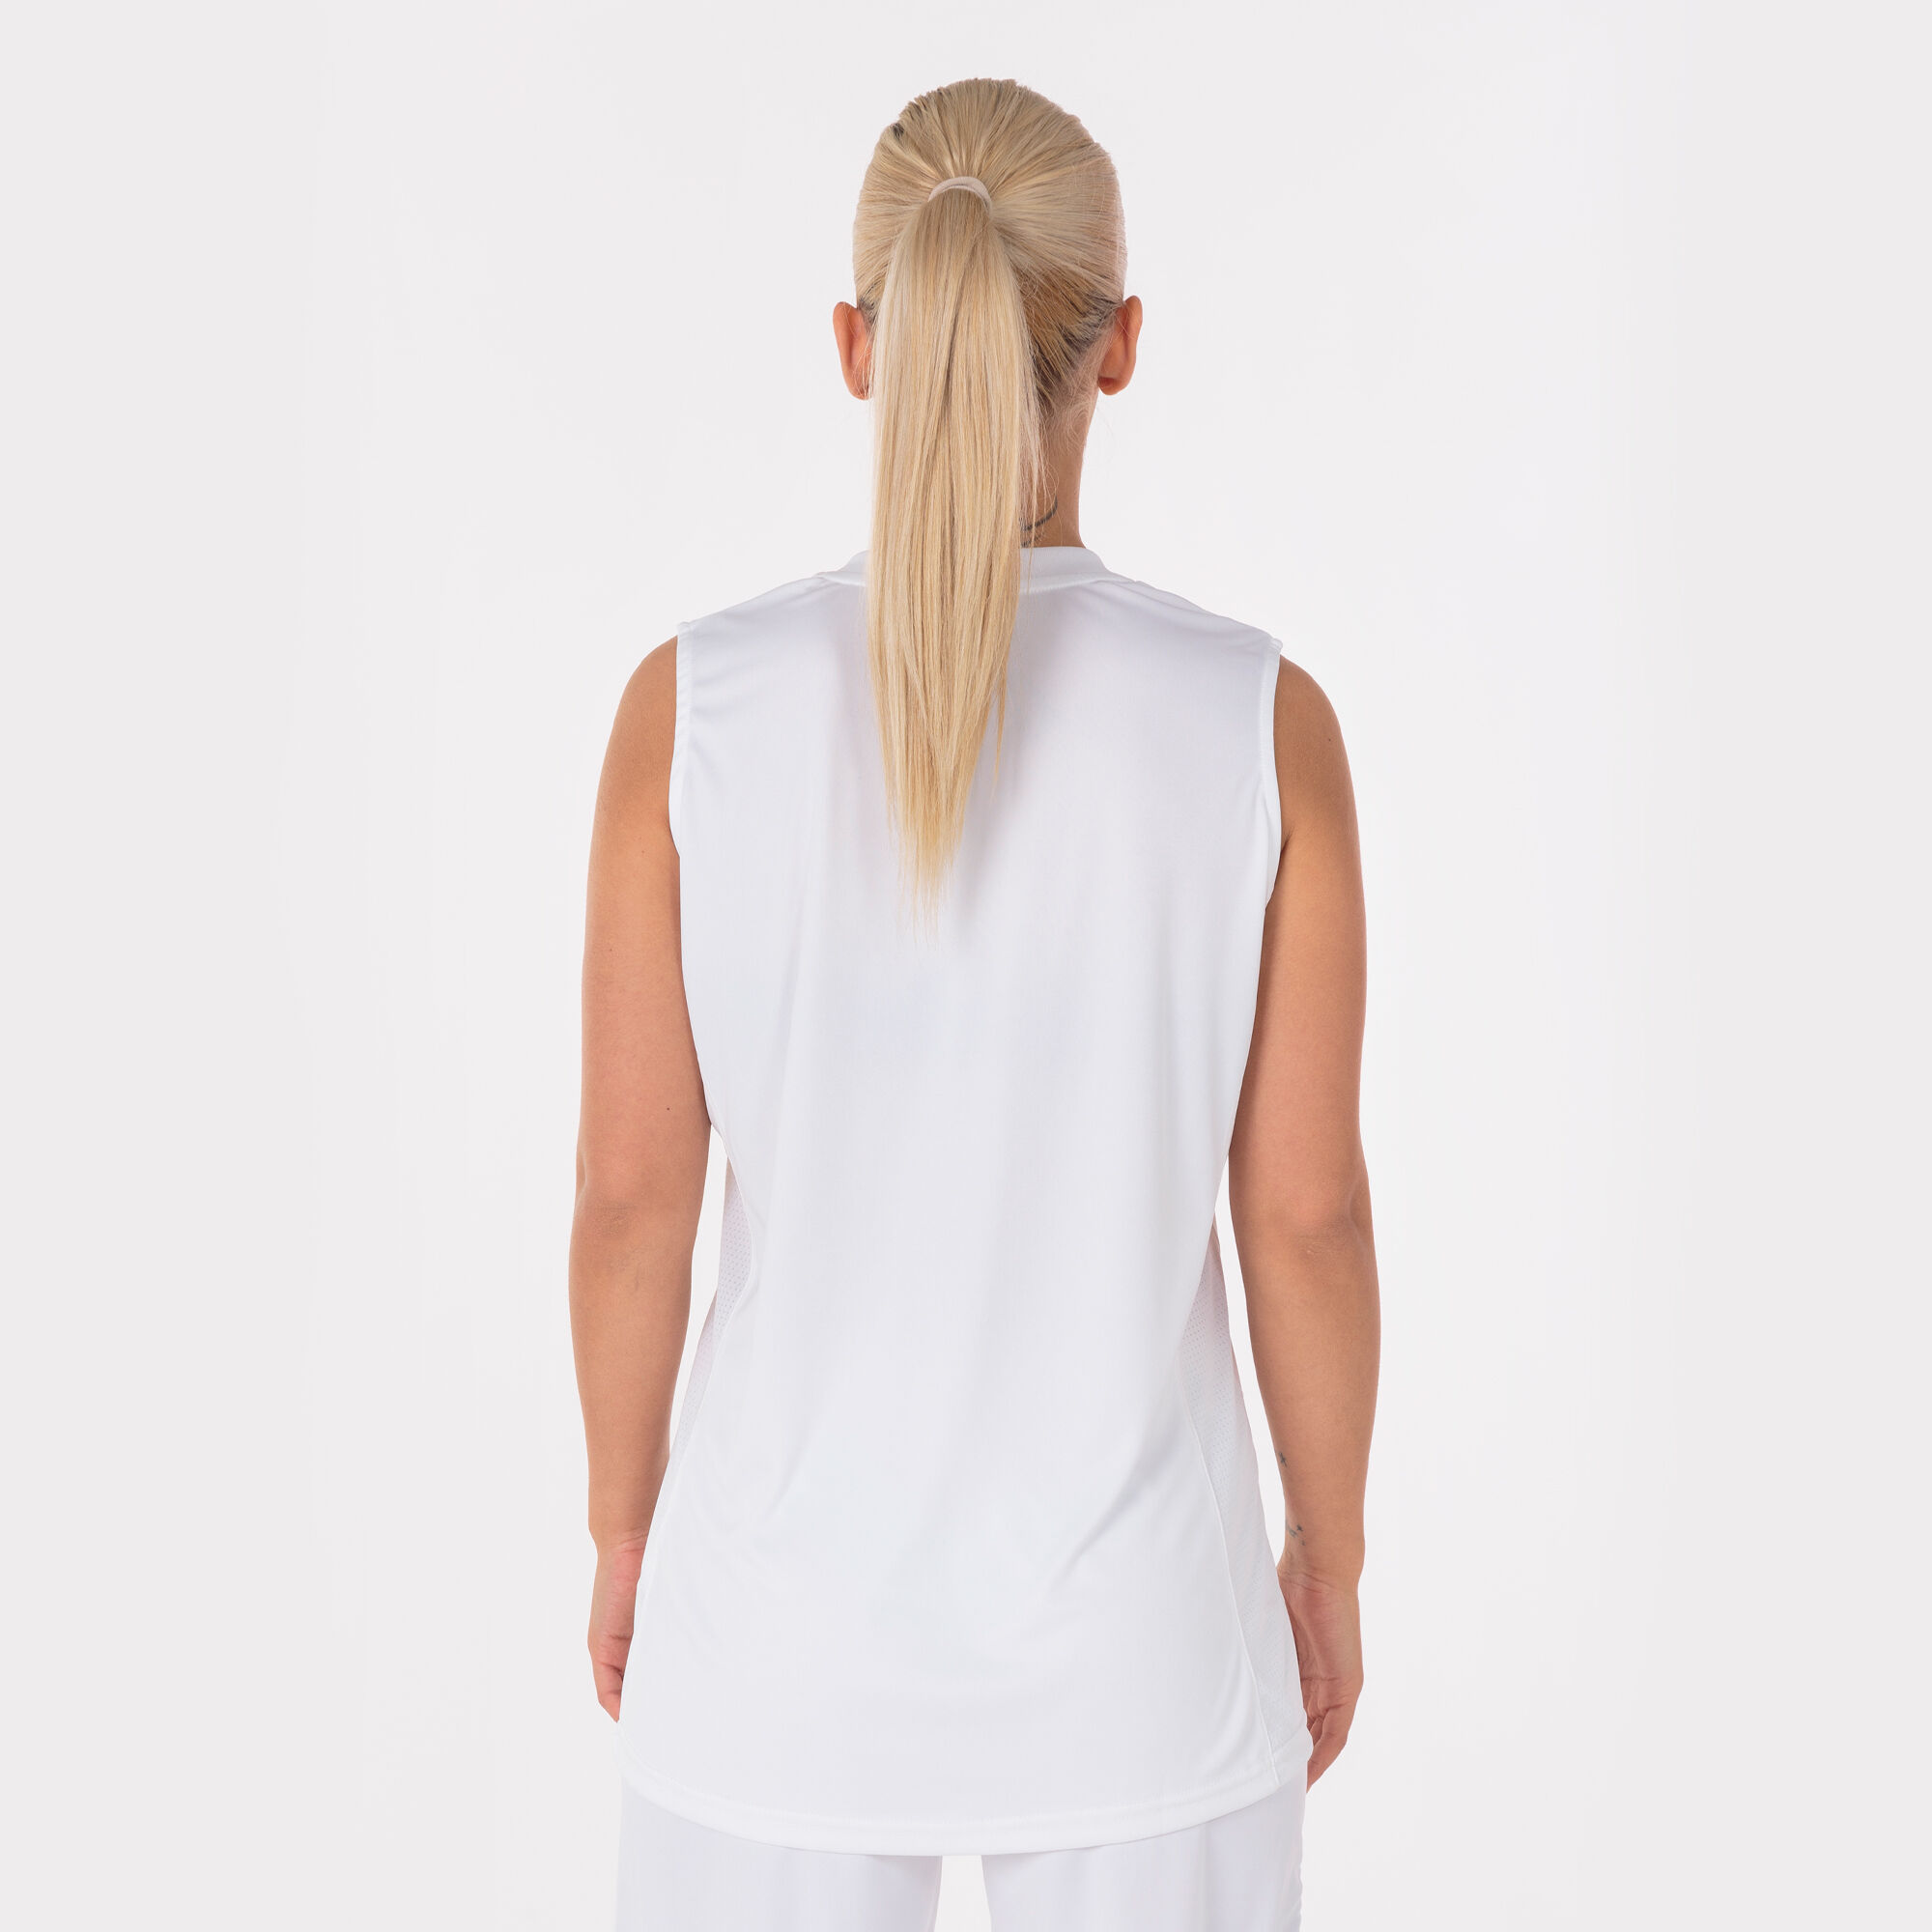 Camiseta sin mangas mujer Cancha III blanco